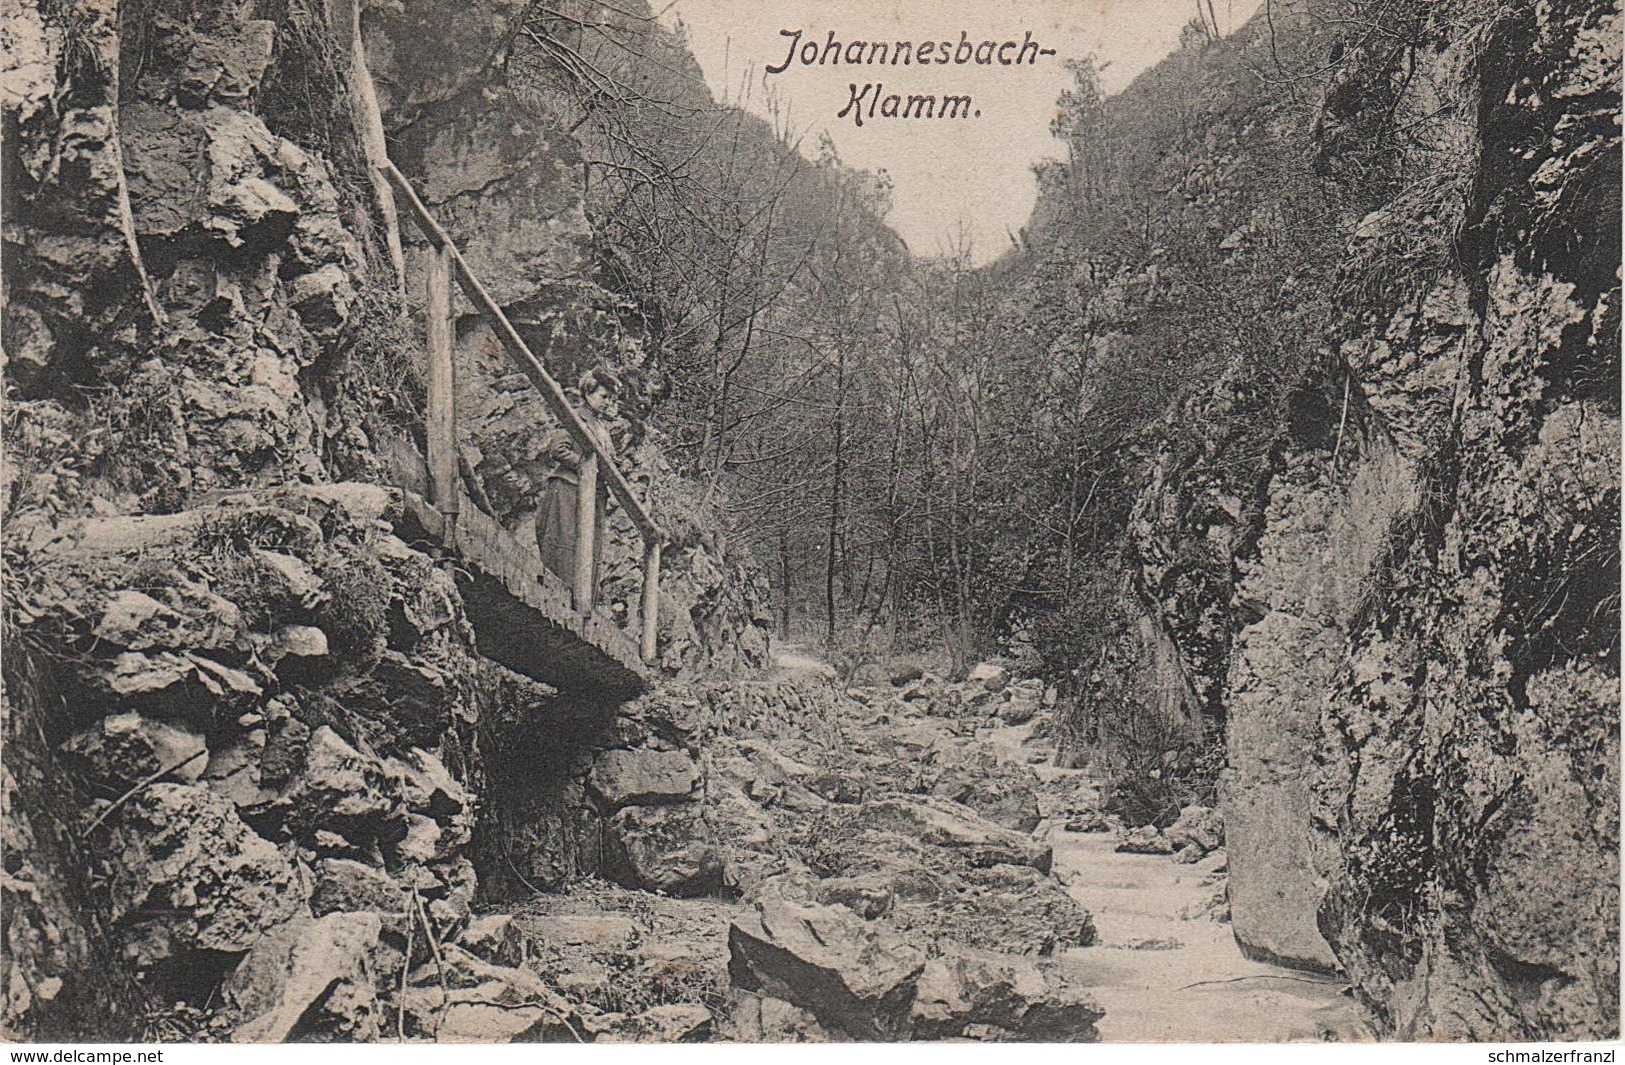 AK Johannesbach Klamm Johannesbachklamm Klettersteig Würflach Willendorf Höflein Grünbach Schneeberg NÖ Niederösterreich - Schneeberggebiet